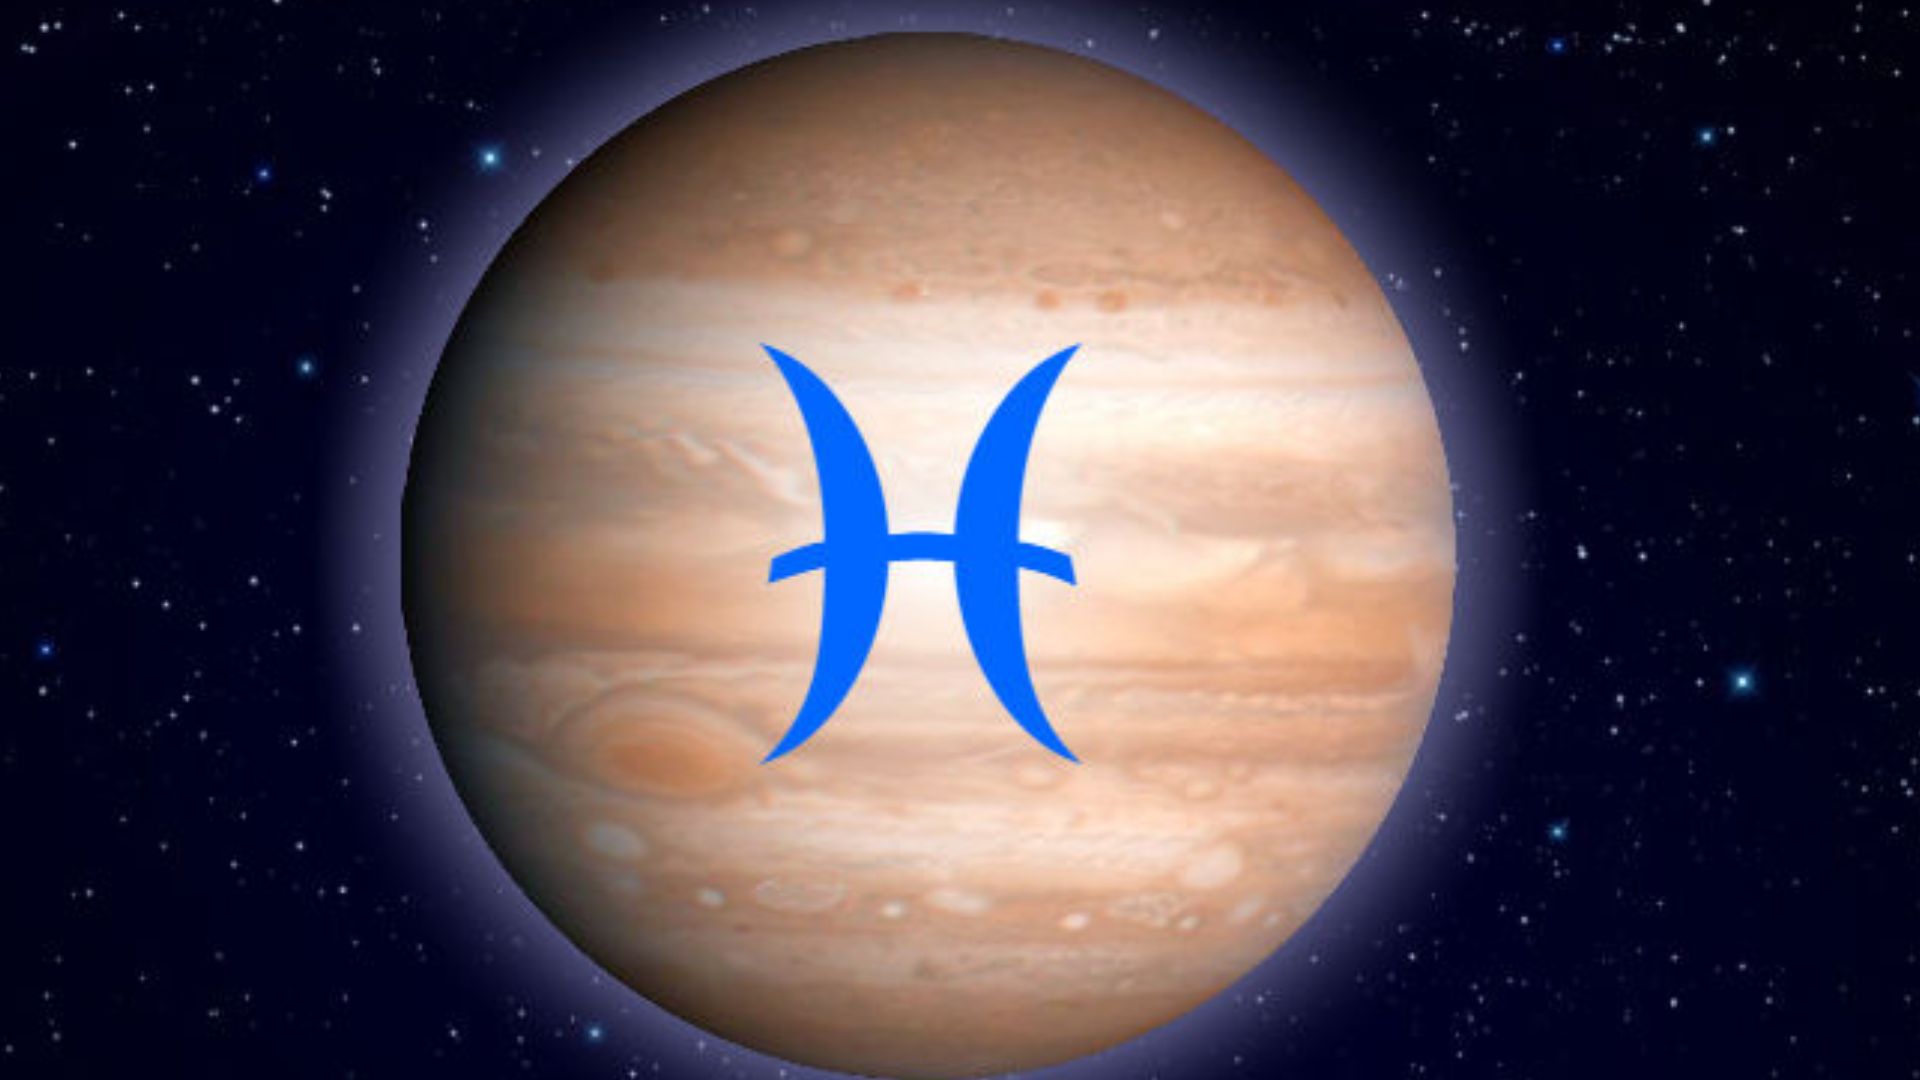 Blue Colored Zodiac Sign In Jupiter